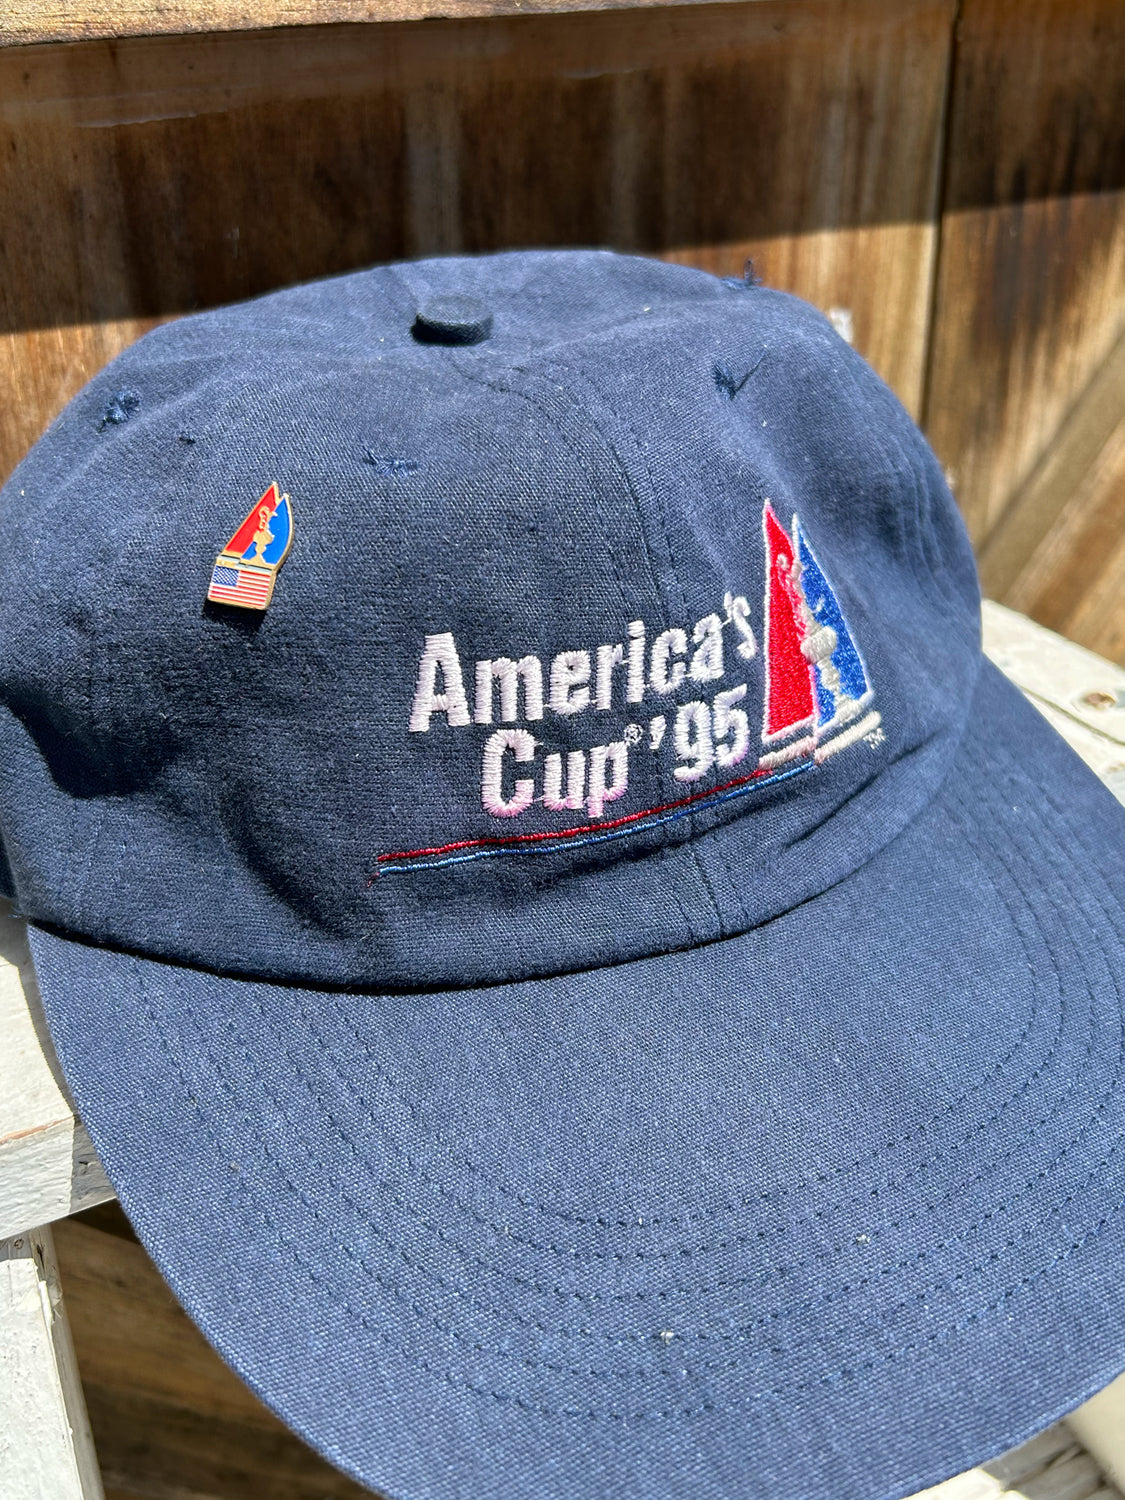 America's Cup Cap - 1995